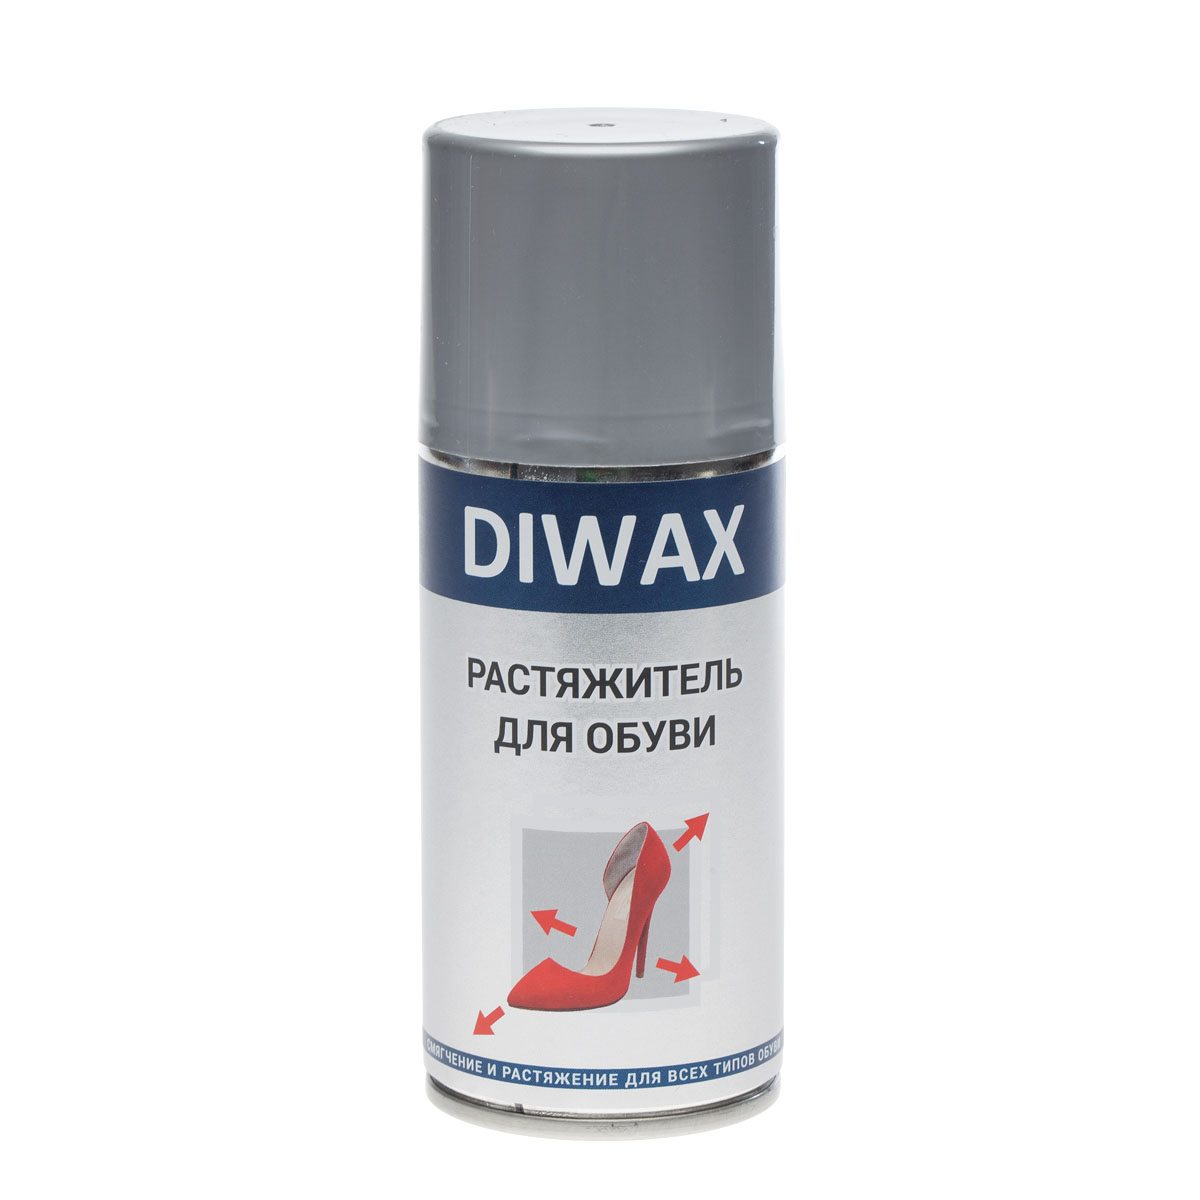 Пена-растяжитель для обуви DIWAX, 5820